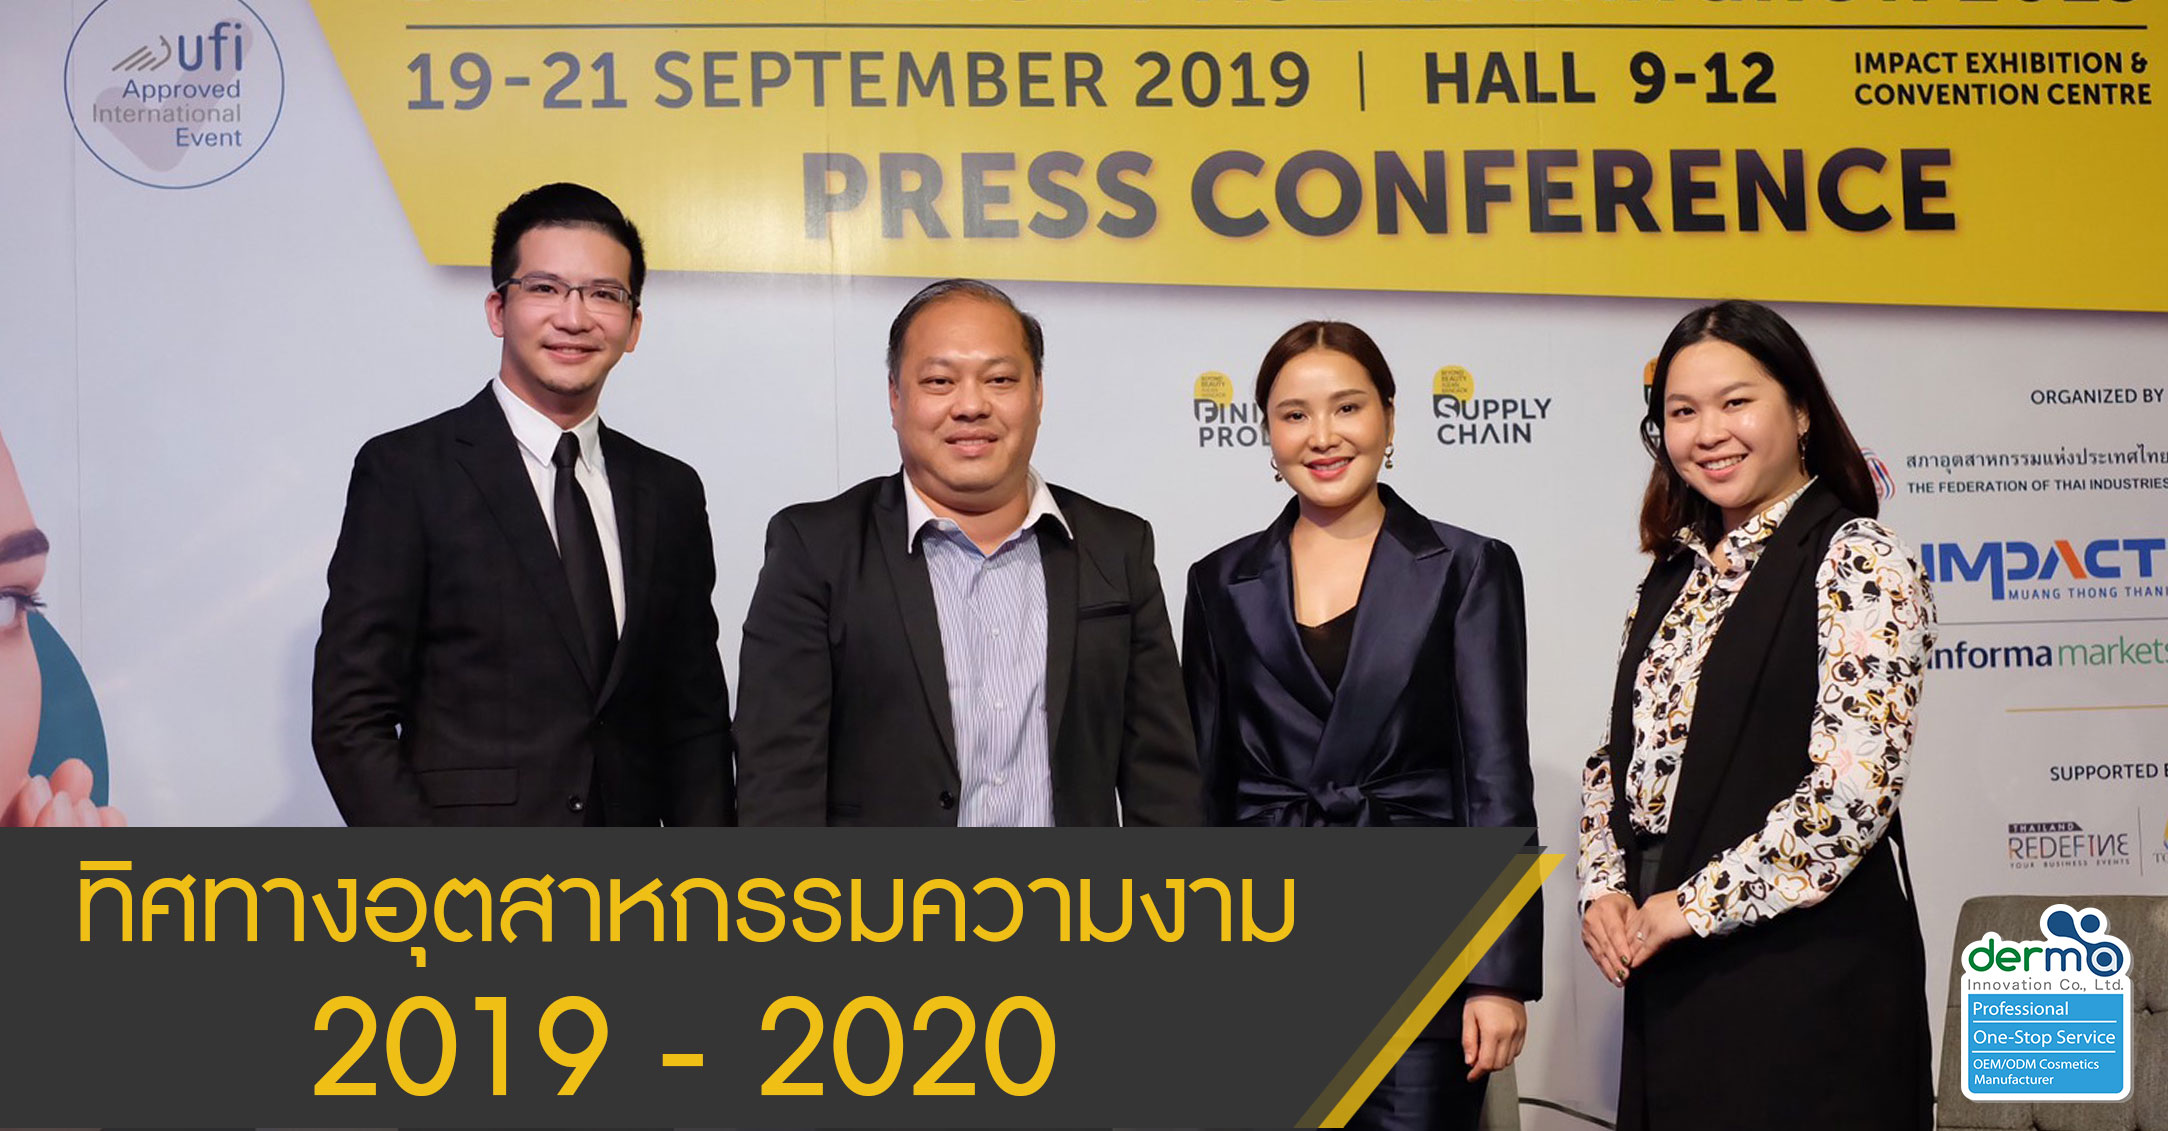 Beyond Beauty ASEAN BANGKOK 2019 Press Conference